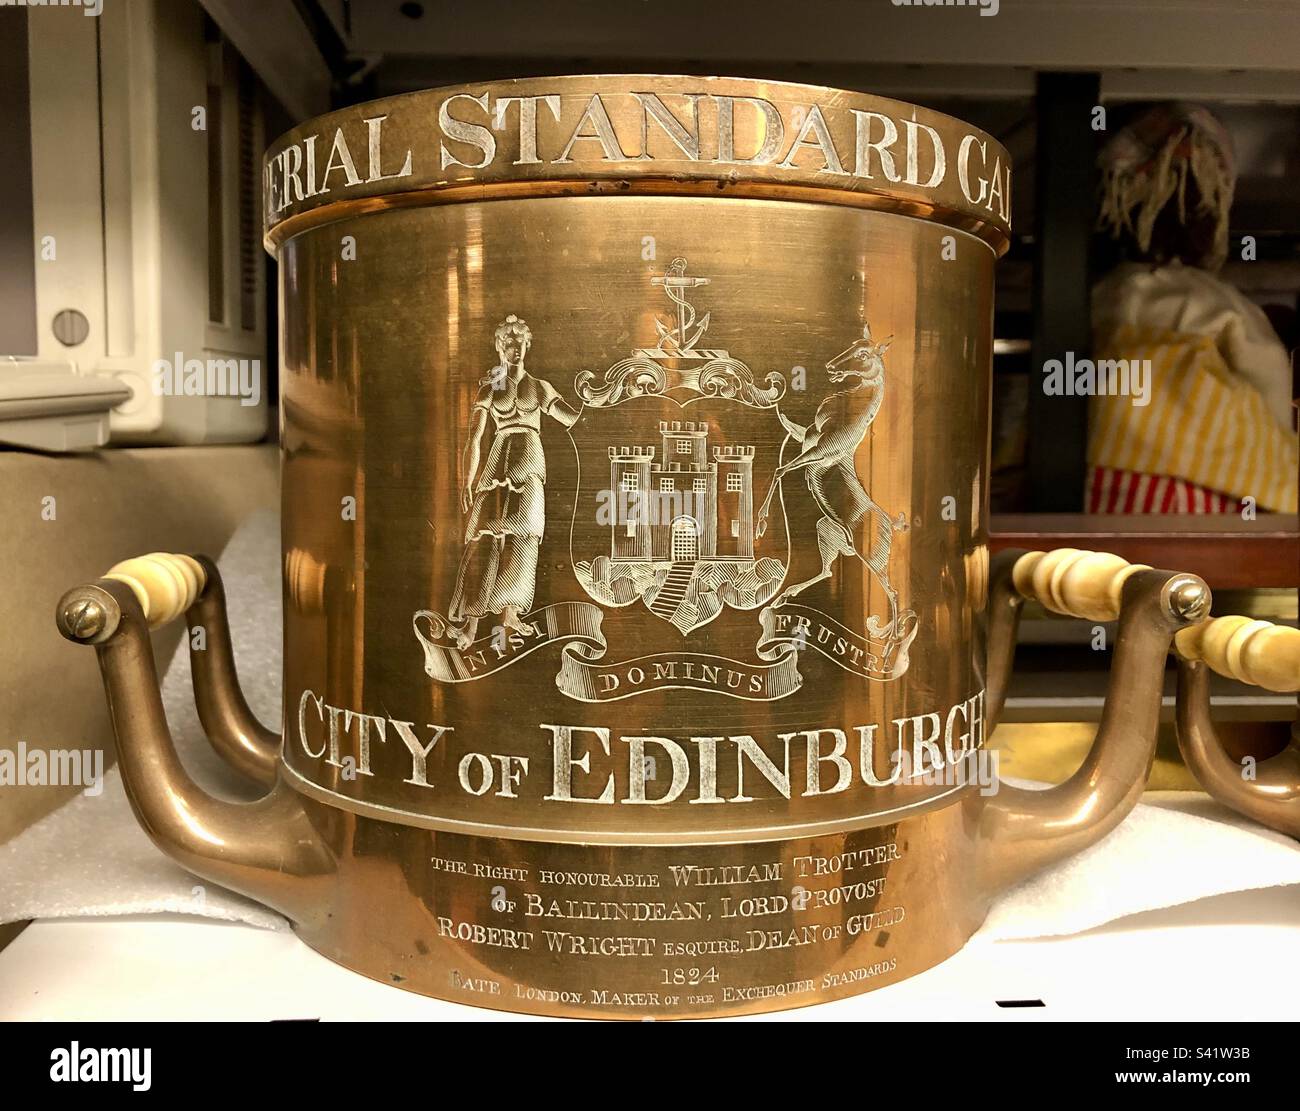 Messbecher mit Gravur aus kupferfarbenem Messbecher Imperial Standard Gallone für die Stadt Edinburgh in Museumssammlung, Schottland, Großbritannien Stockfoto